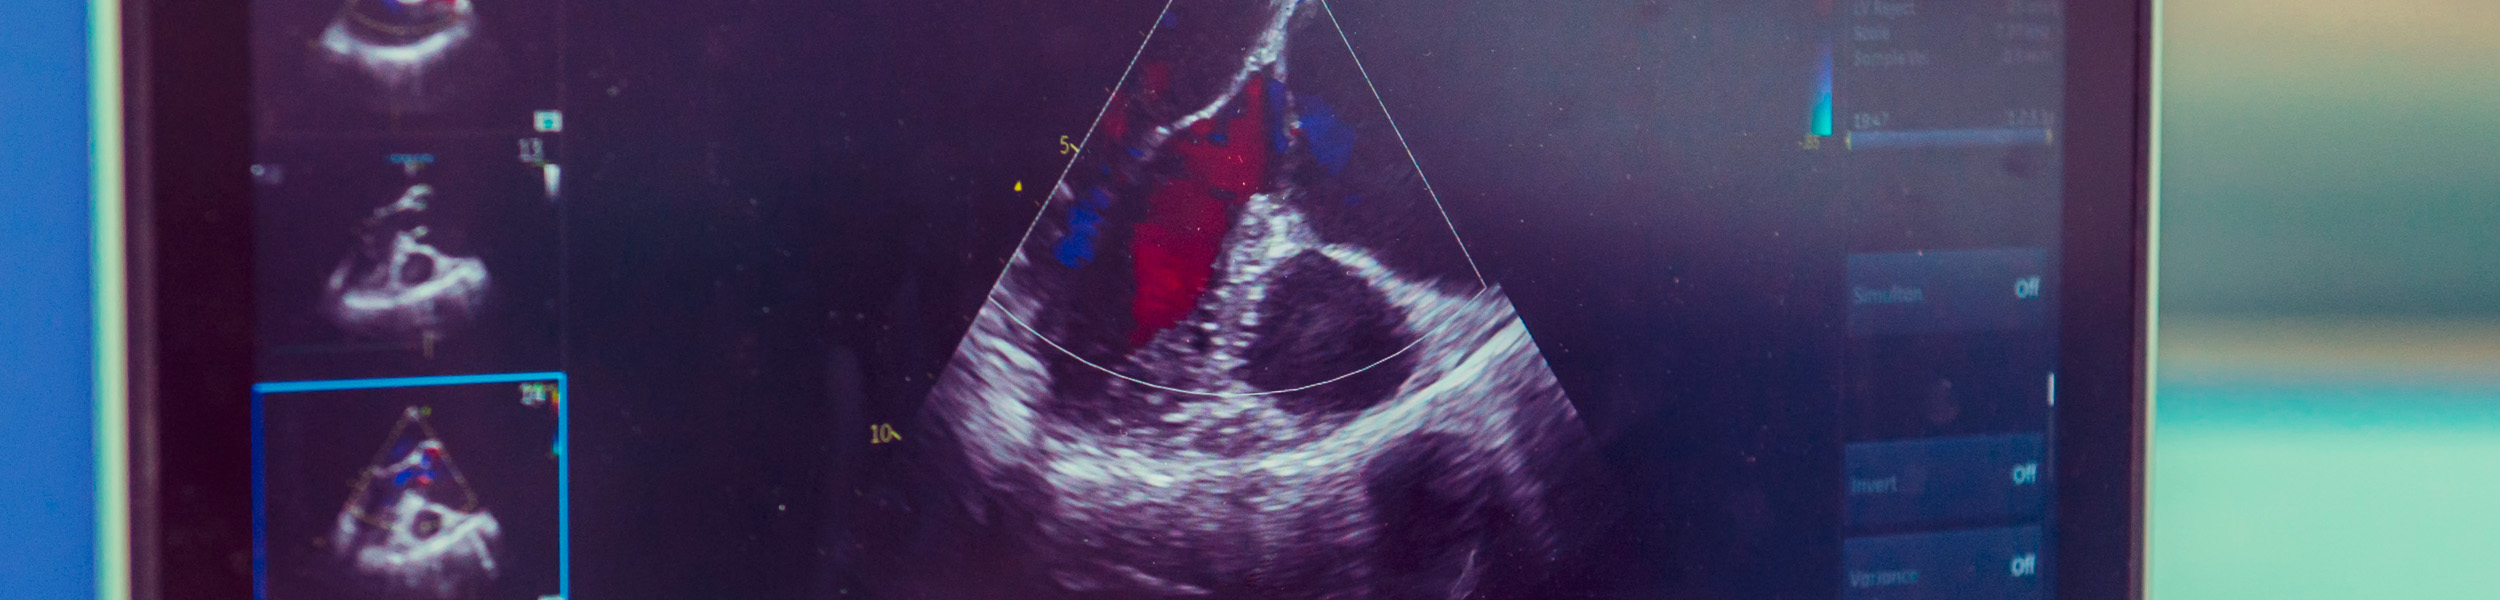 Ein Bildschirm mit laufendem Herz-Ultraschall